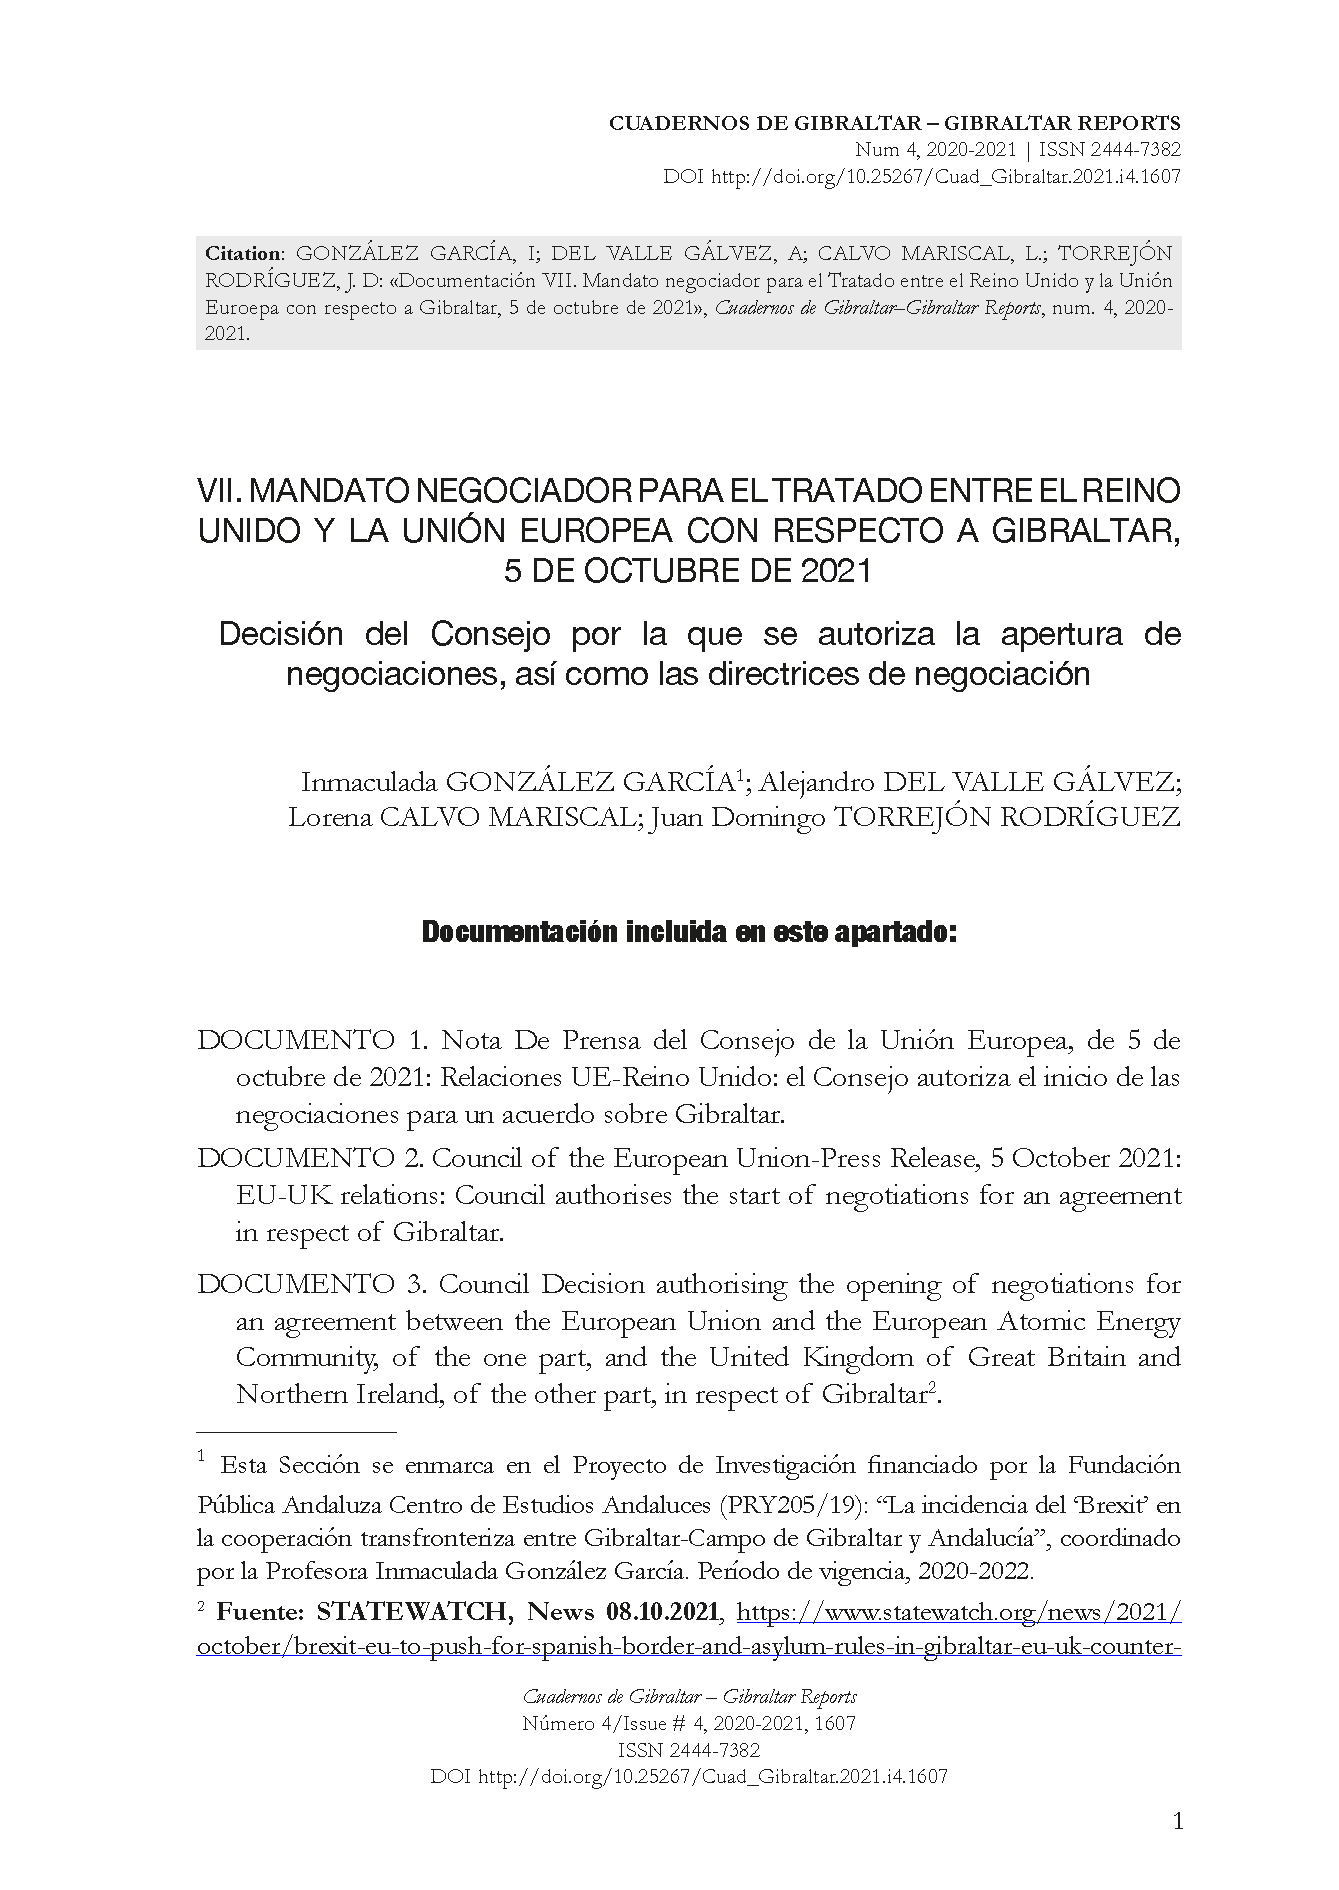 Documentación VII. Mandato negociador para el Tratado entre el Reino Unido y la Unión Euroepa con respecto a Gibraltar, 5 de octubre de 2021